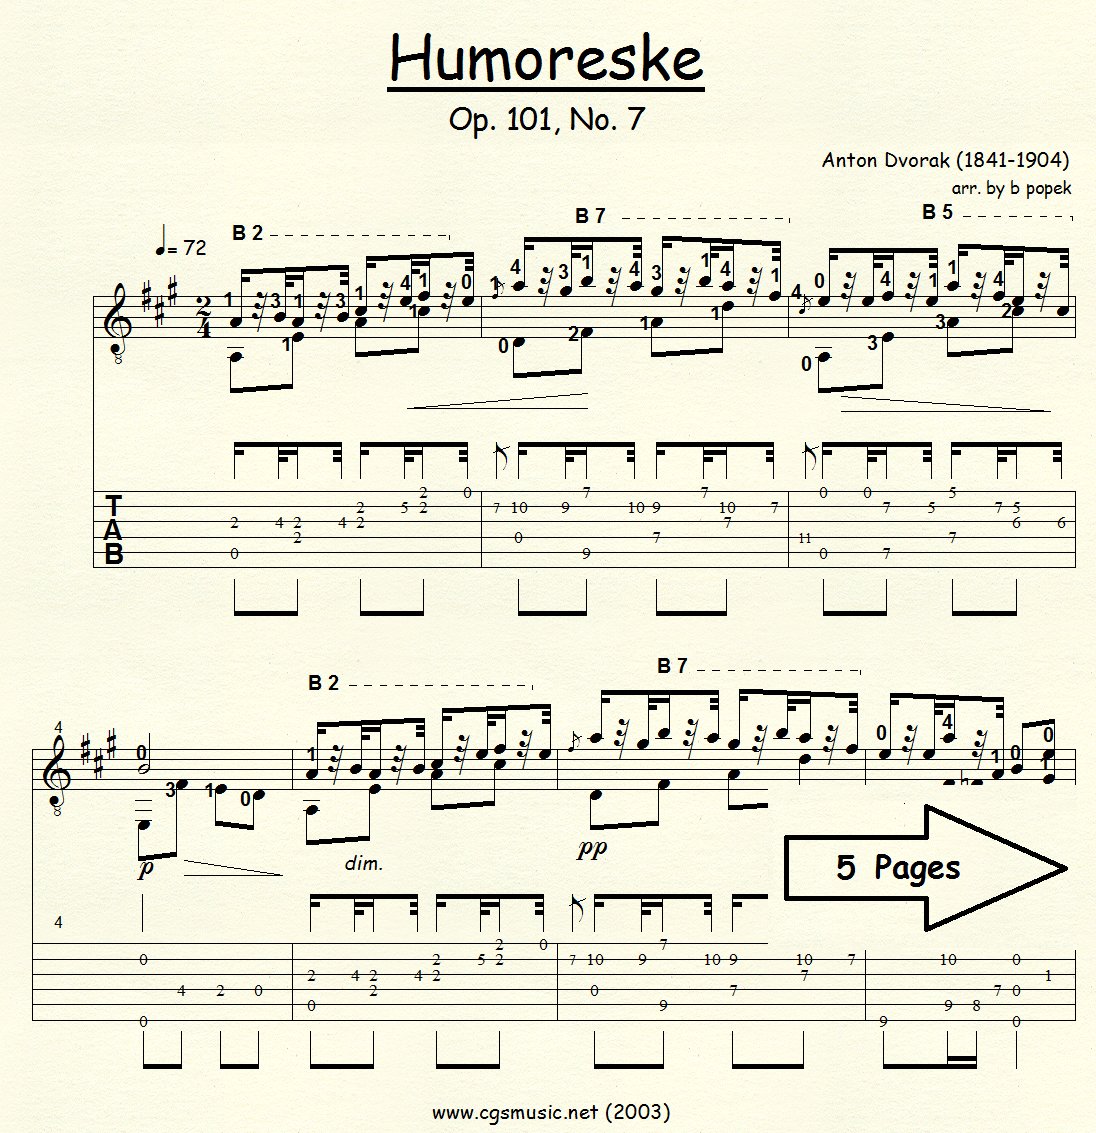 Humoreske Op.101, No. 7 (Dvorak) for Classical Guitar in Tablature